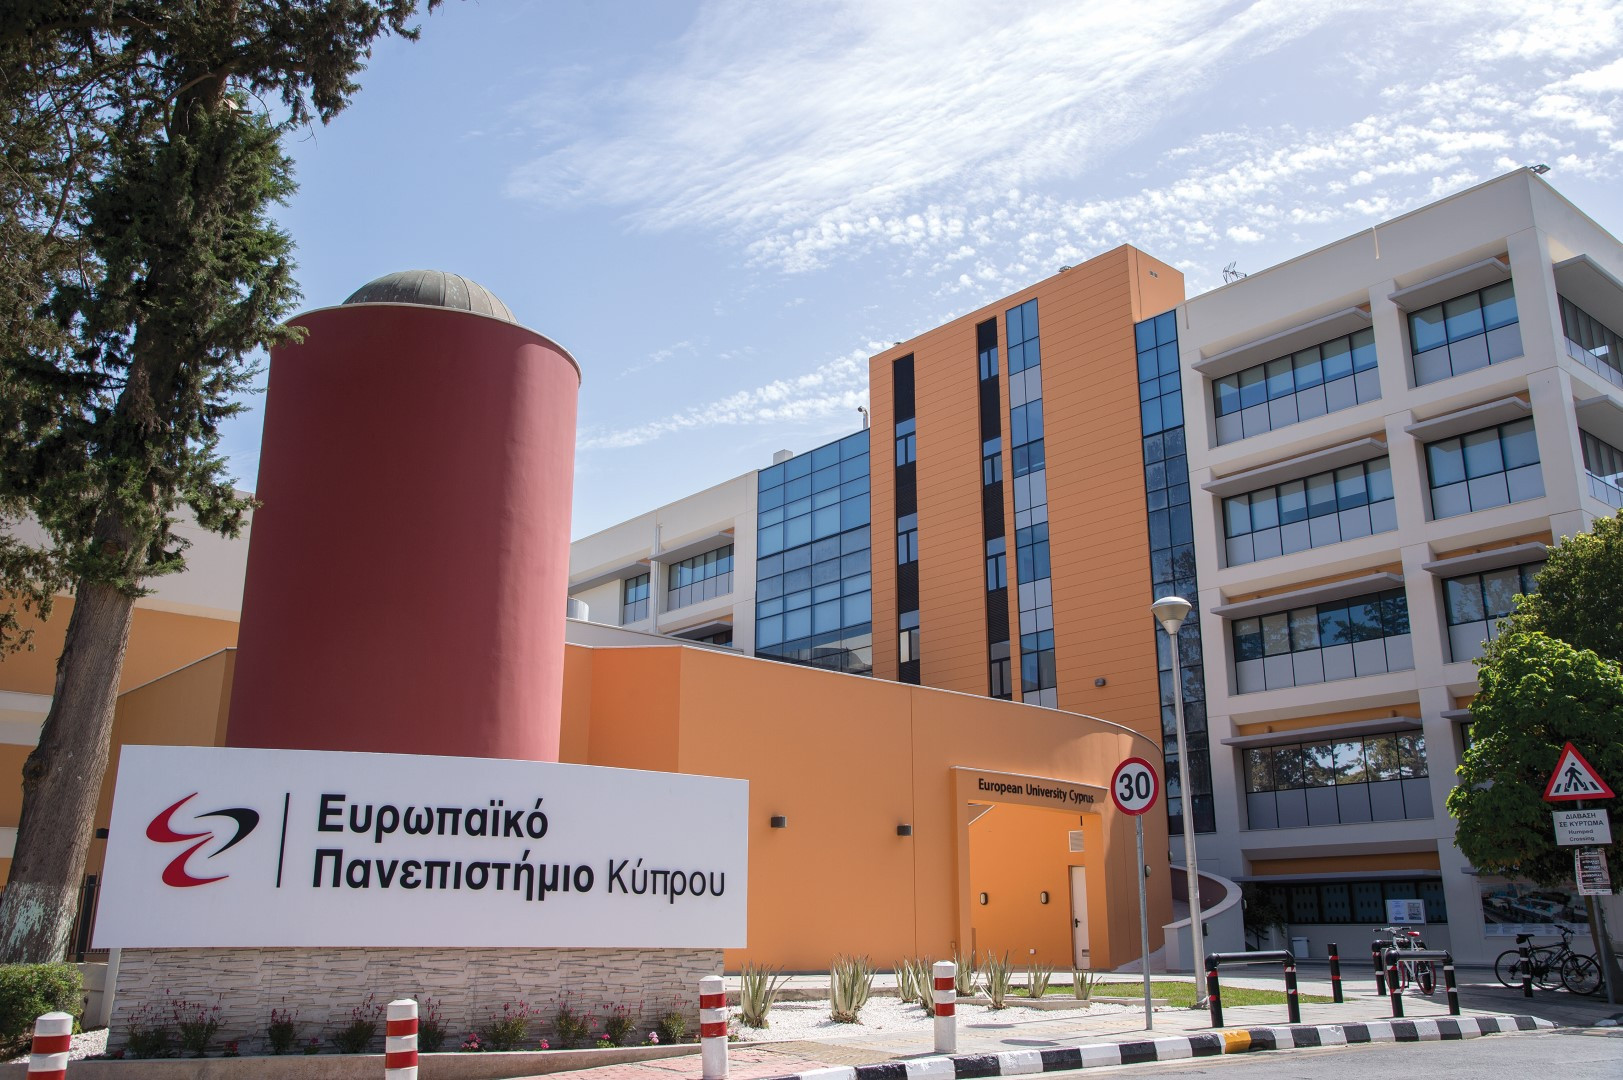 Ο ρόλος του Επαγγελματικού Προσανατολισμού στην μετά-Covid-19 εποχή από το Ευρωπαϊκό Πανεπιστήμιο Κύπρου